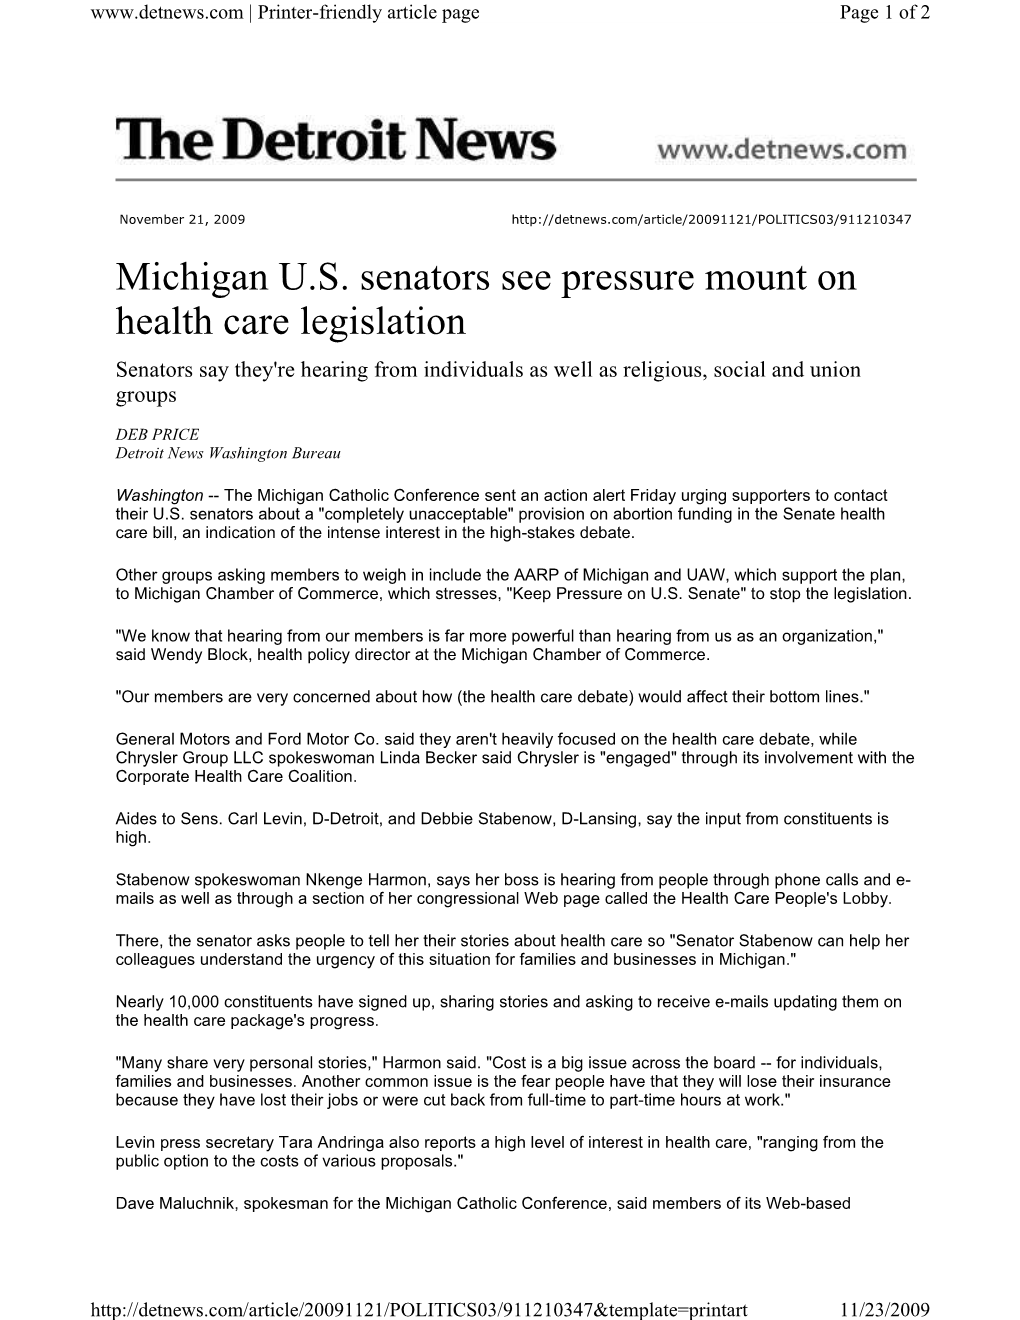 Michigan U.S. Senators See Pressure Mount on Health Care Legislation